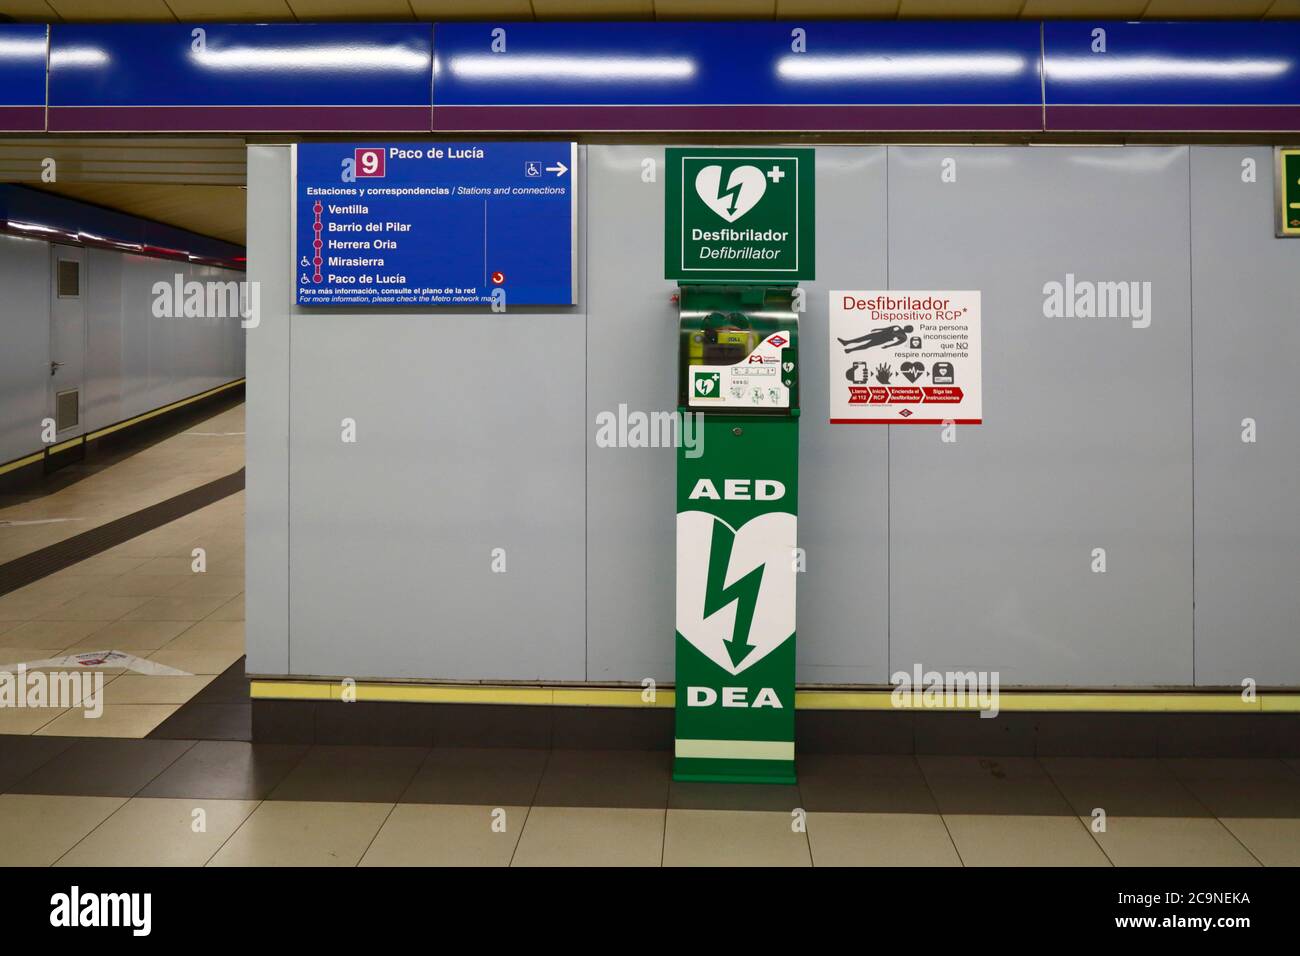 Defibrilator e attrezzature di pronto soccorso alla stazione di emergenza a Paco de Lucia, stazione della metropolitana linea 9, Madrid, Spagna Foto Stock